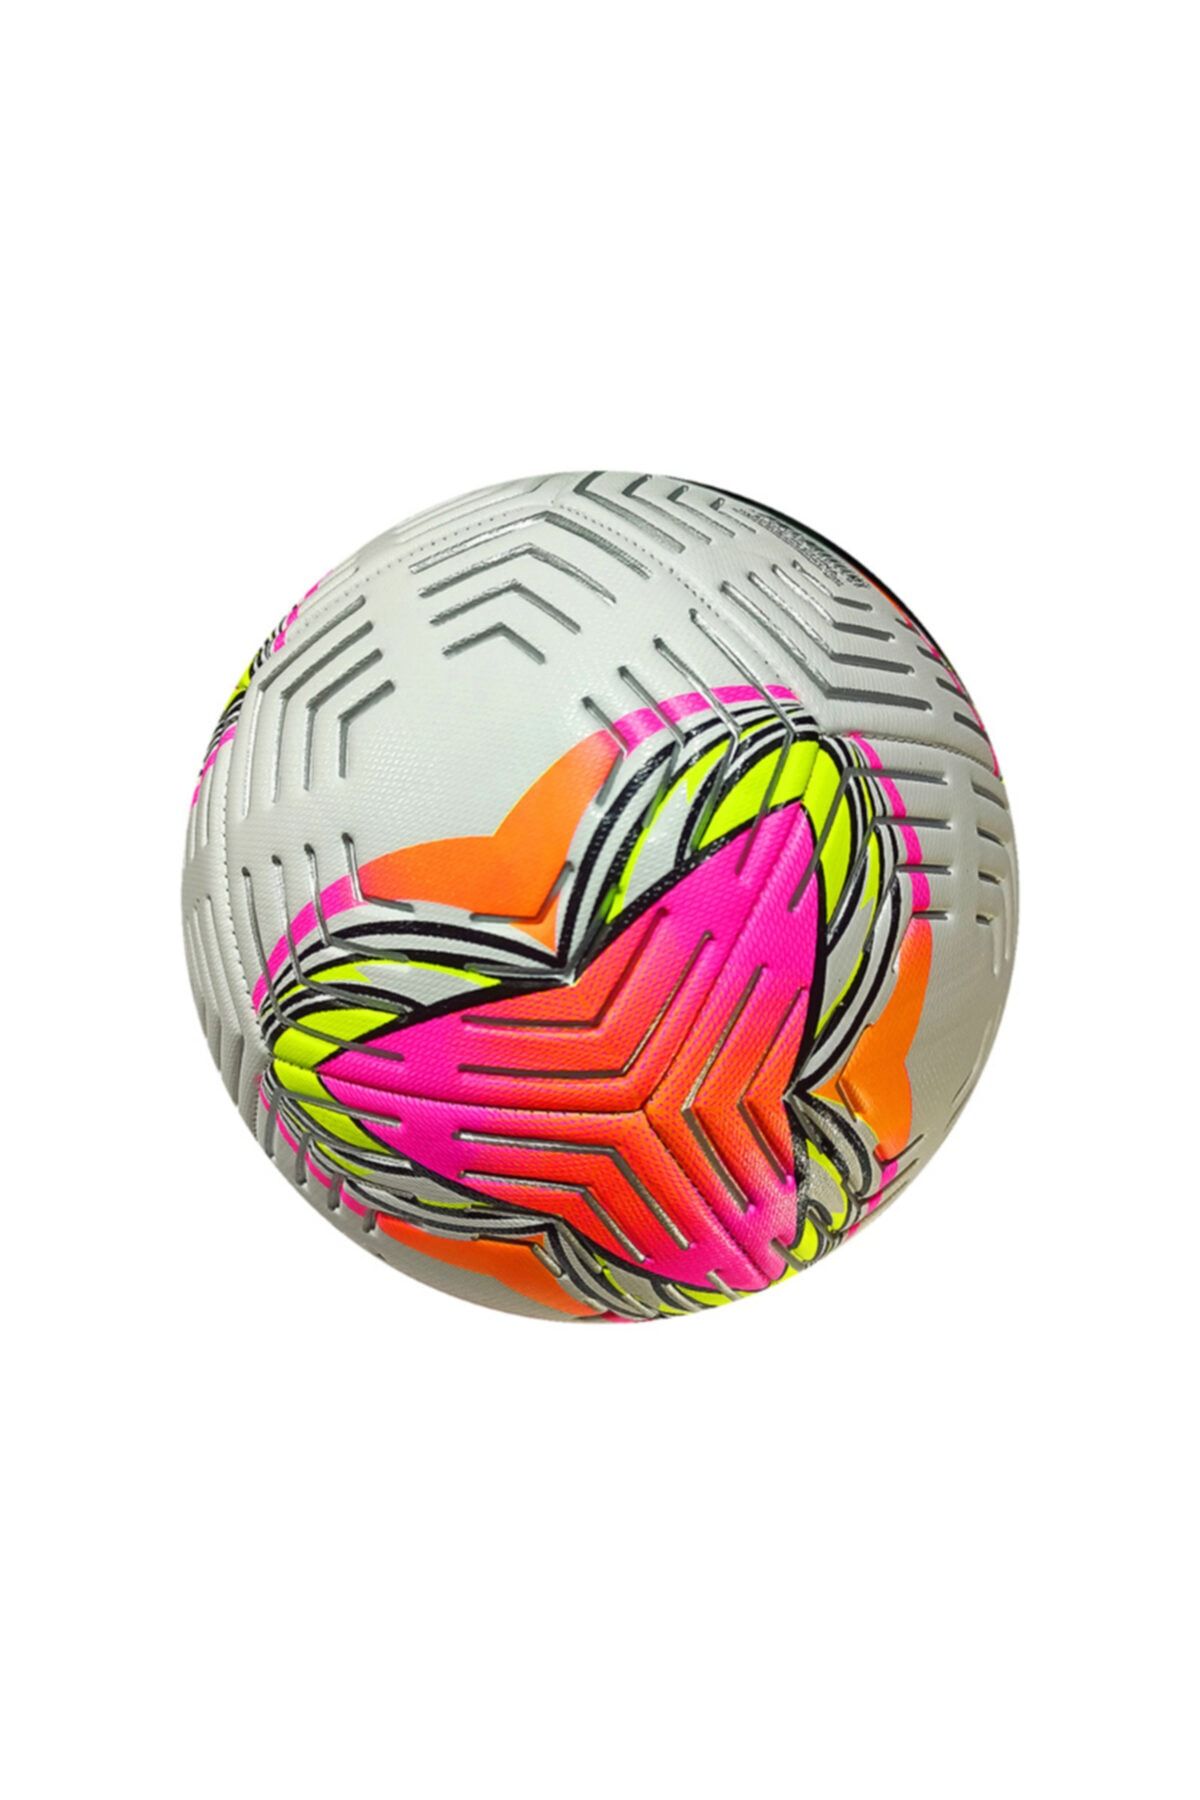 Avessa Futbol Topu No:5 Pembe-turuncu Bsf-015